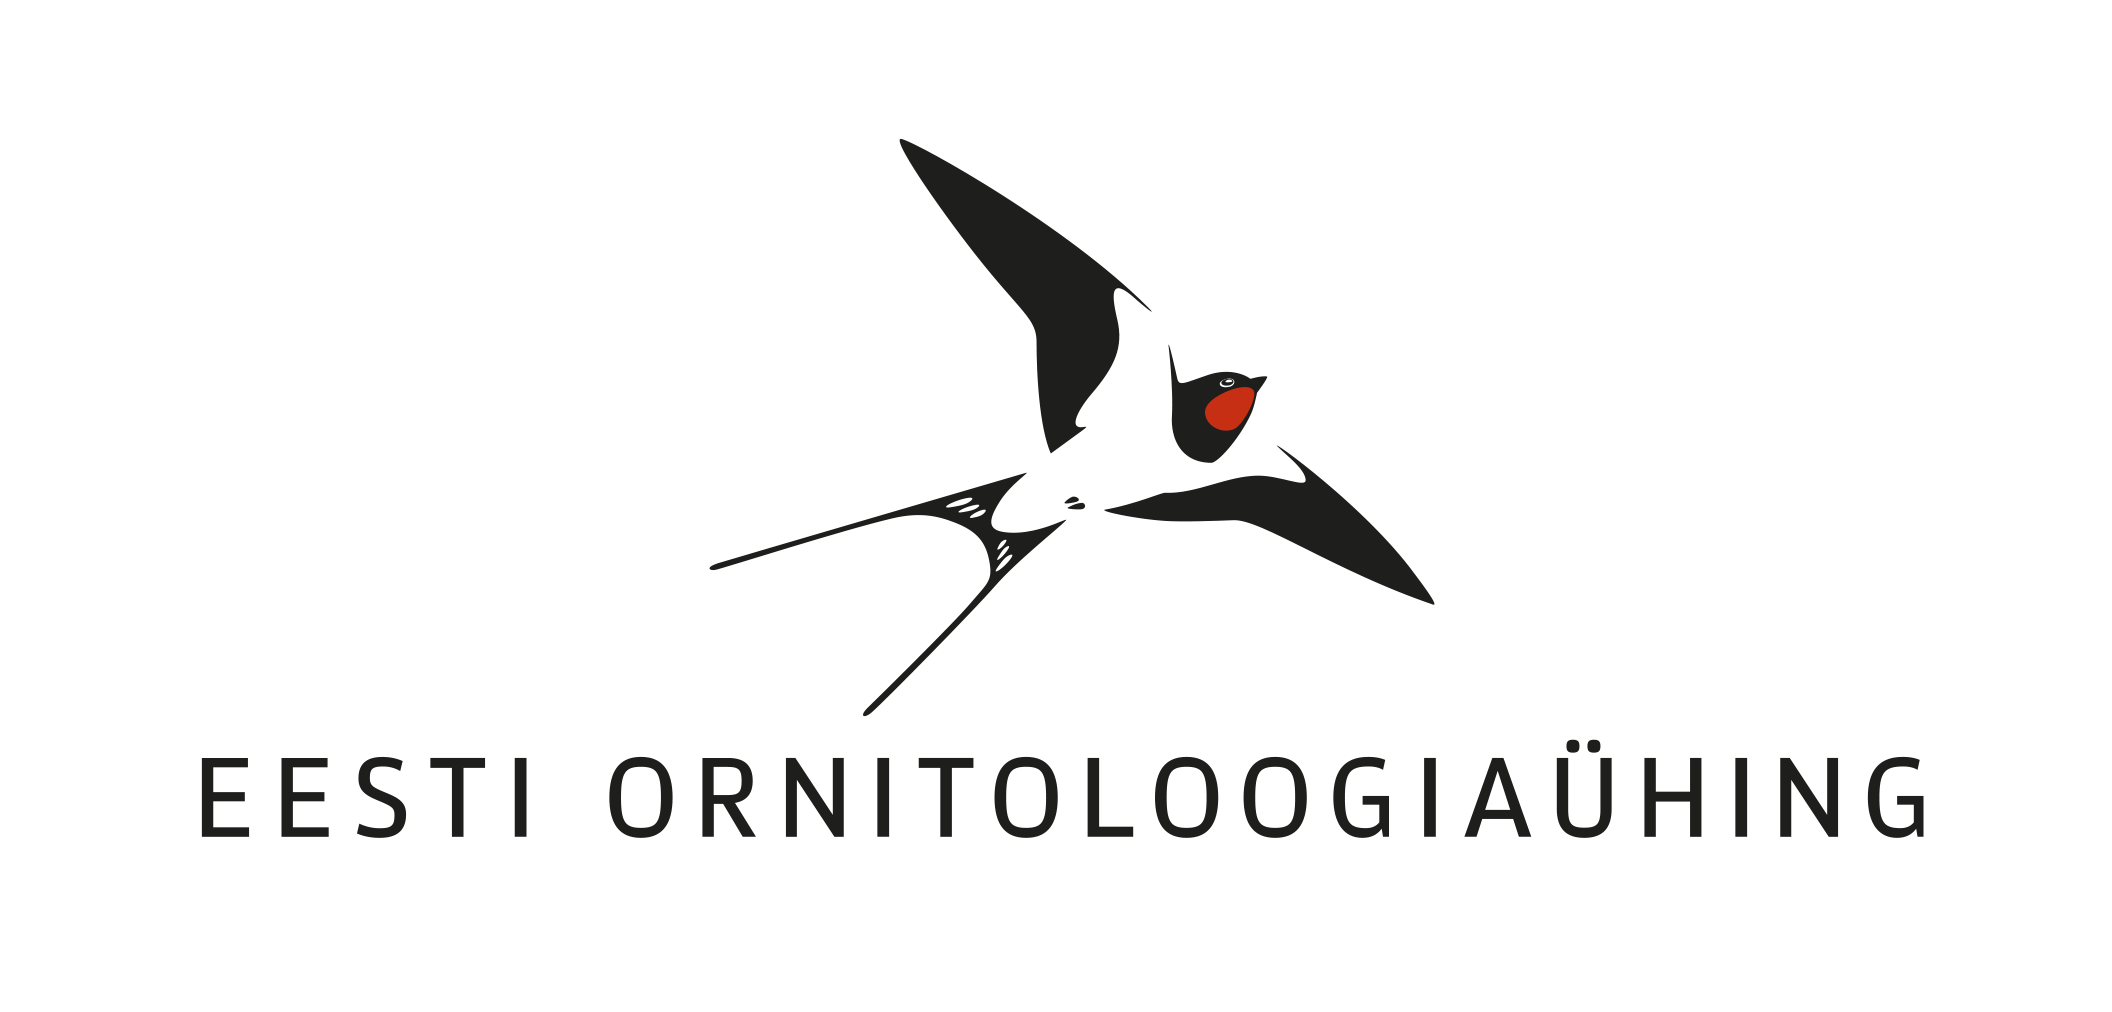 Estonian Ornithological Society